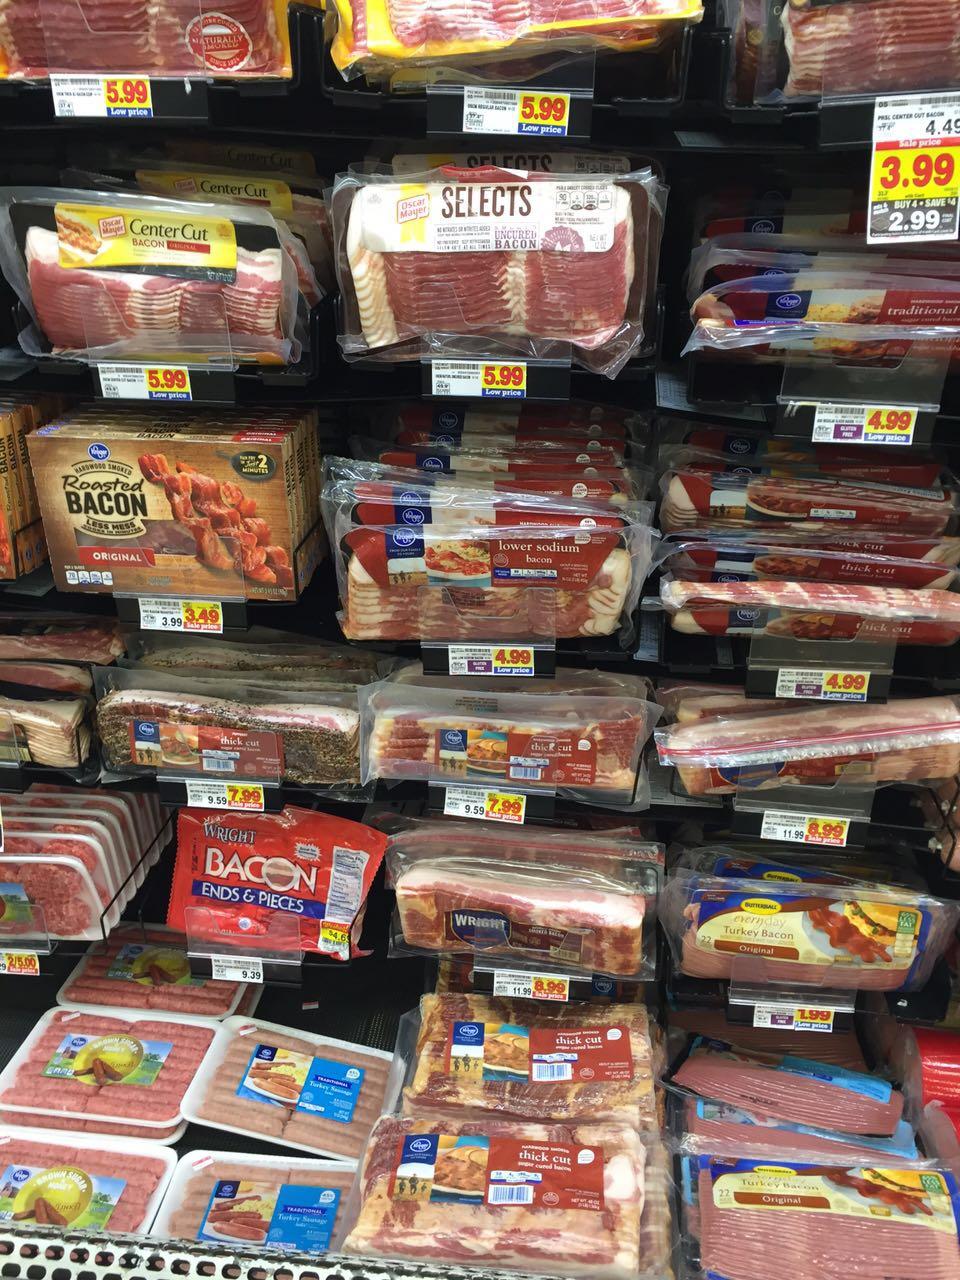 美国人吃猪肉吗?我说的是带肥肉的猪肉。因为